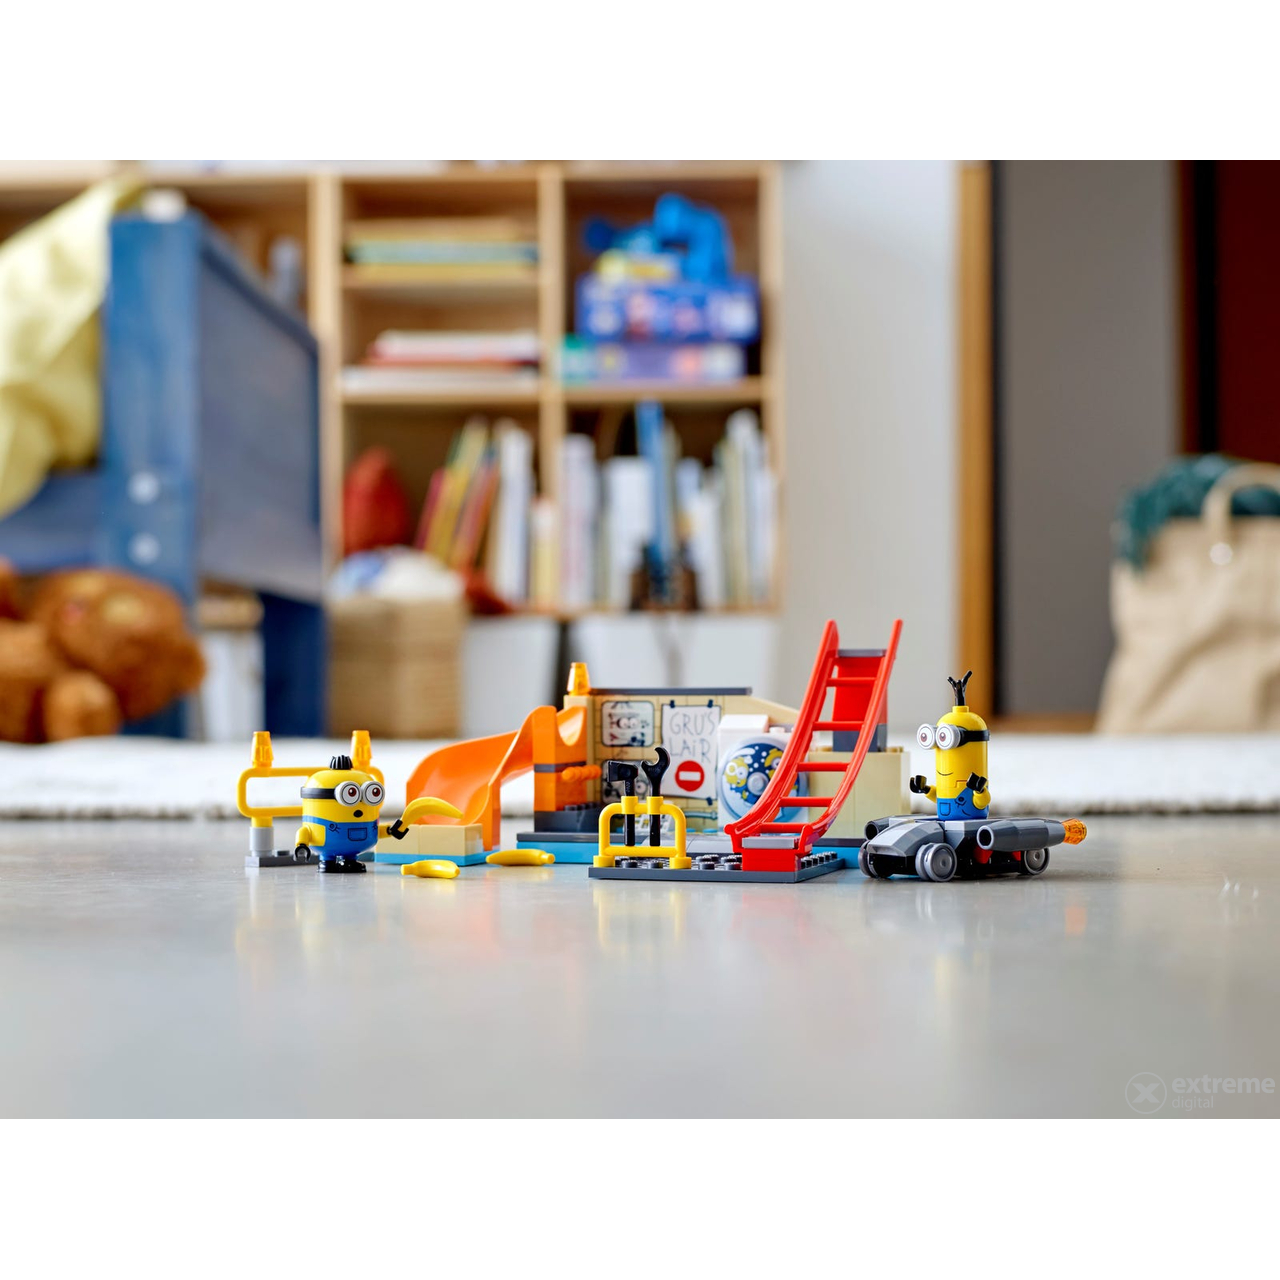 LEGO® Minions 75546 Minions in Grus Labor